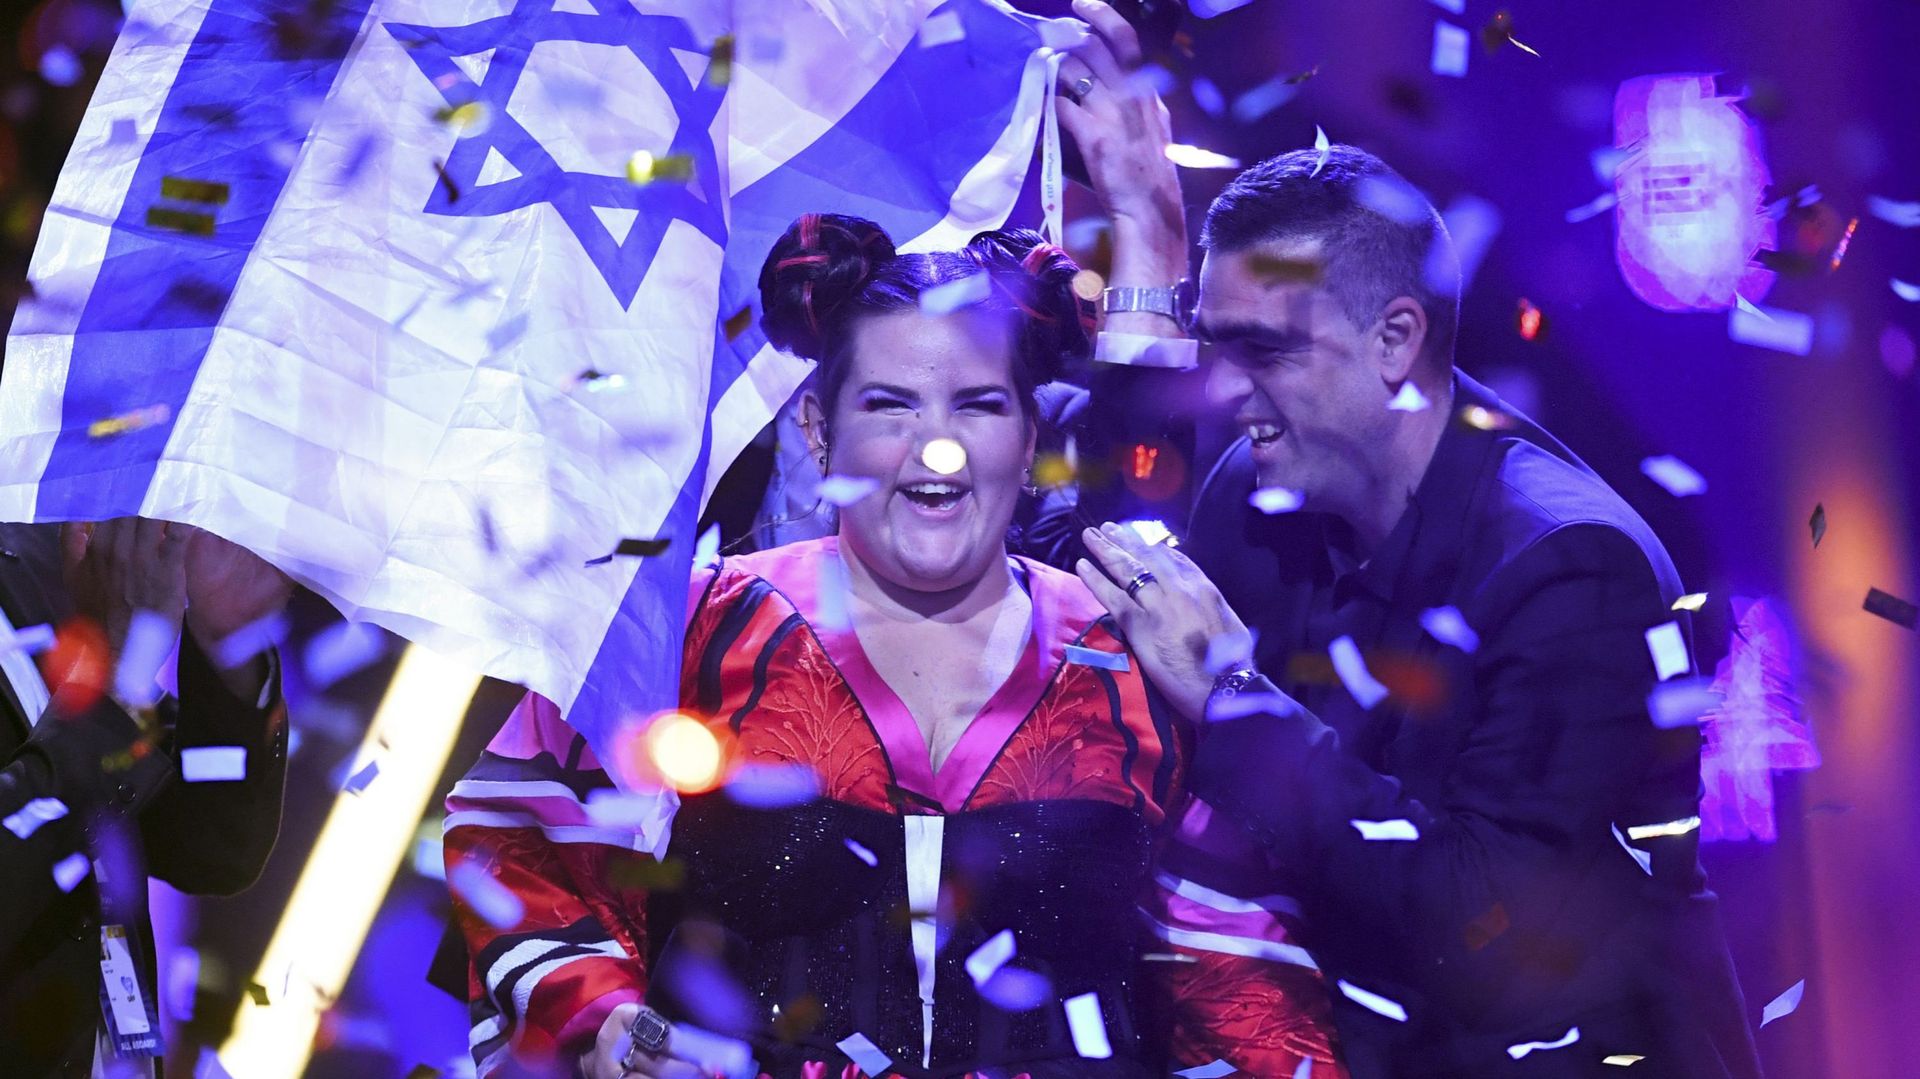 Le 64e concours Eurovision de la chanson se tiendra à Tel-Aviv, et non à Jérusalem